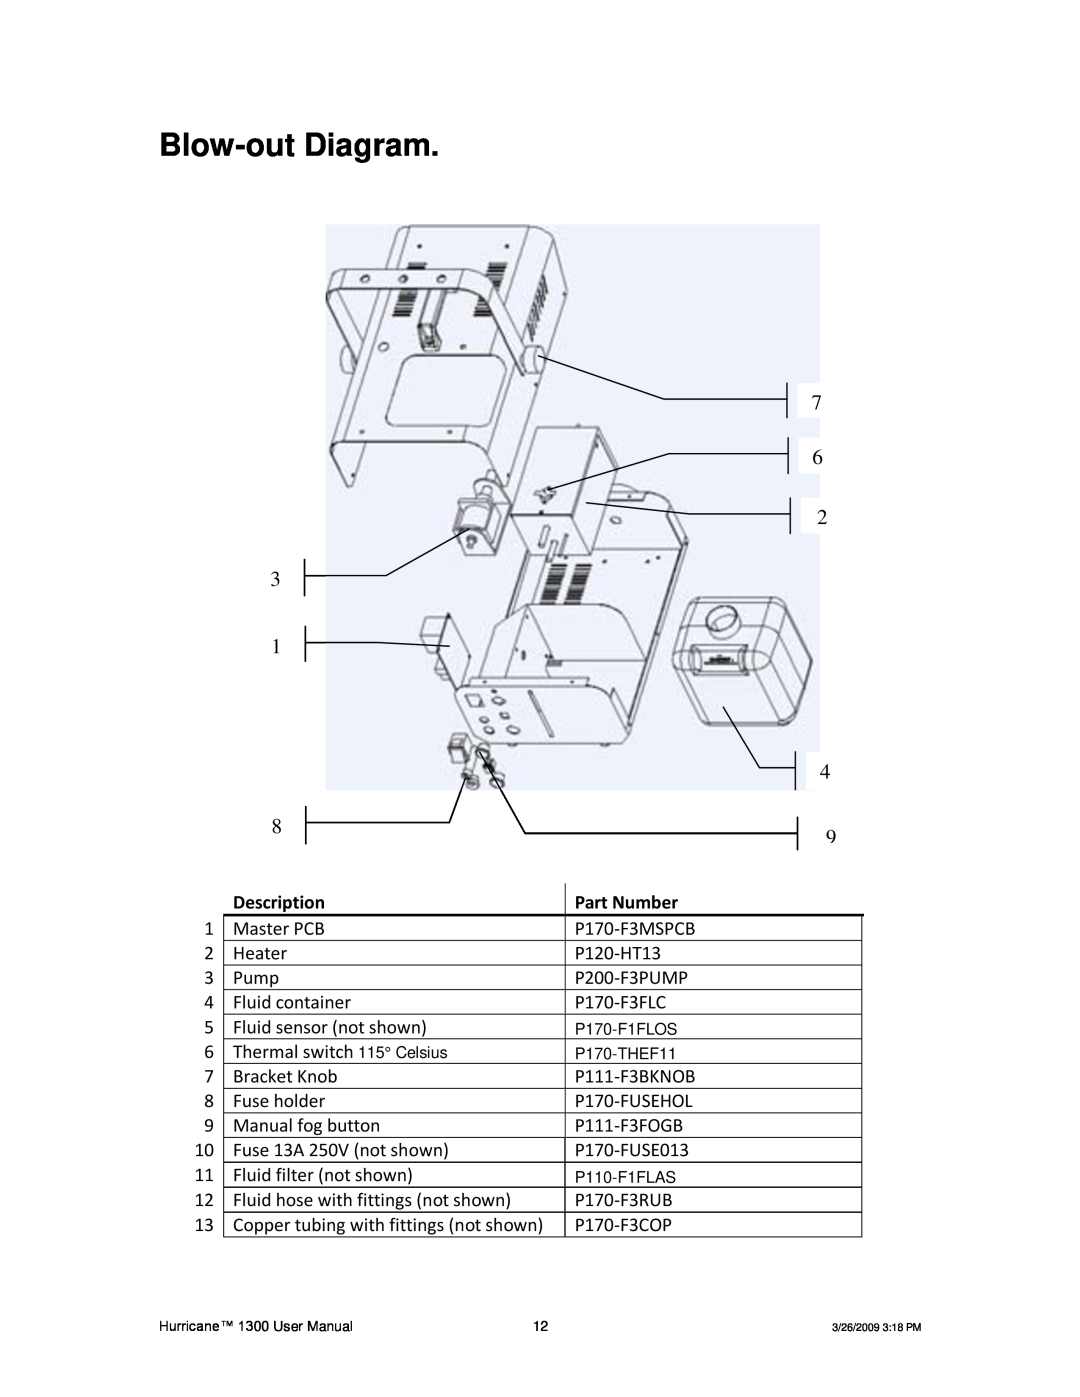 Chauvet Hurricane 1300 user manual Blow-out Diagram, Description, Part Number 